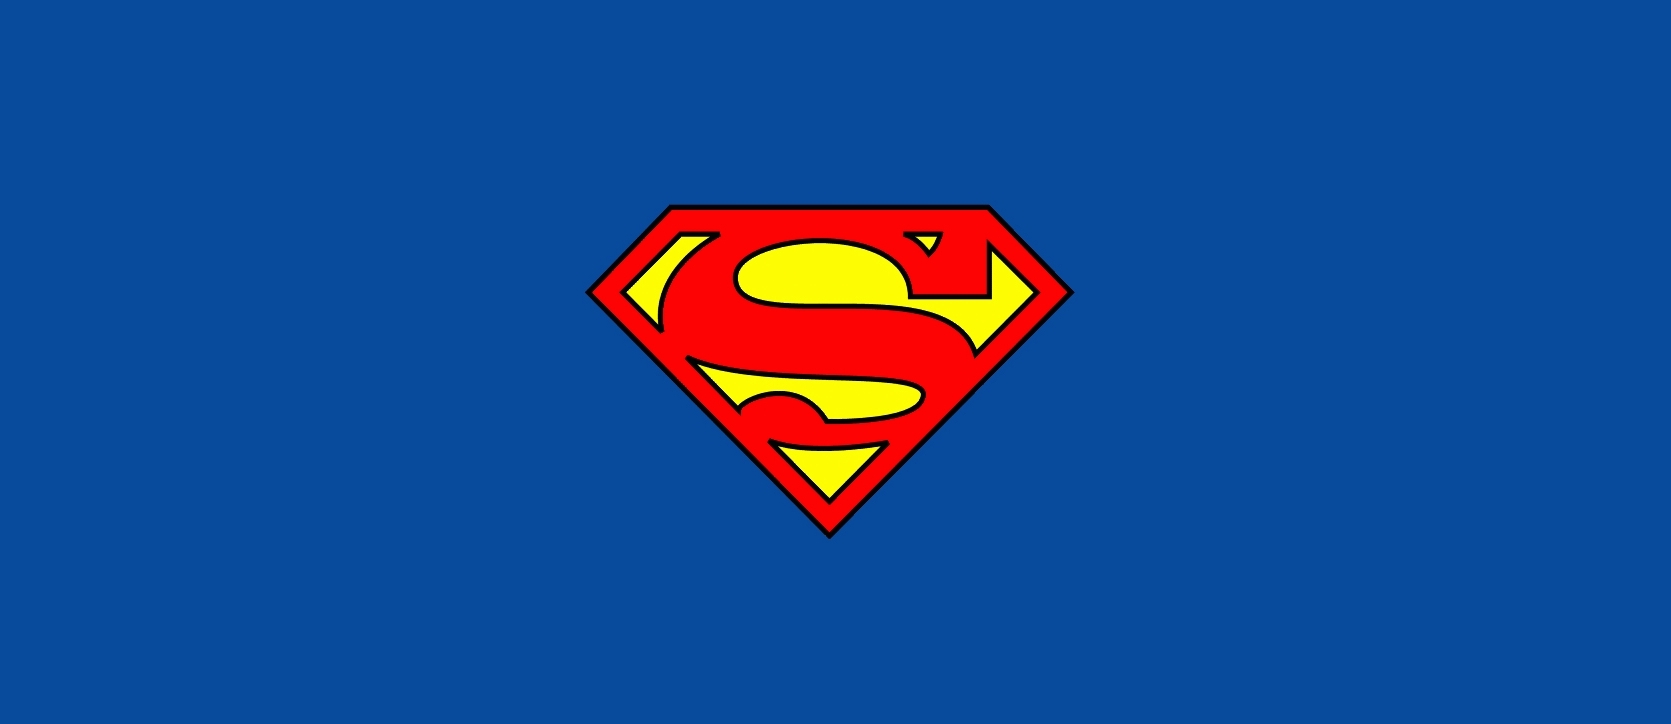 슈퍼맨 로고 벽지,슈퍼맨,소설 속의 인물,슈퍼 히어로,사법 리그,상징